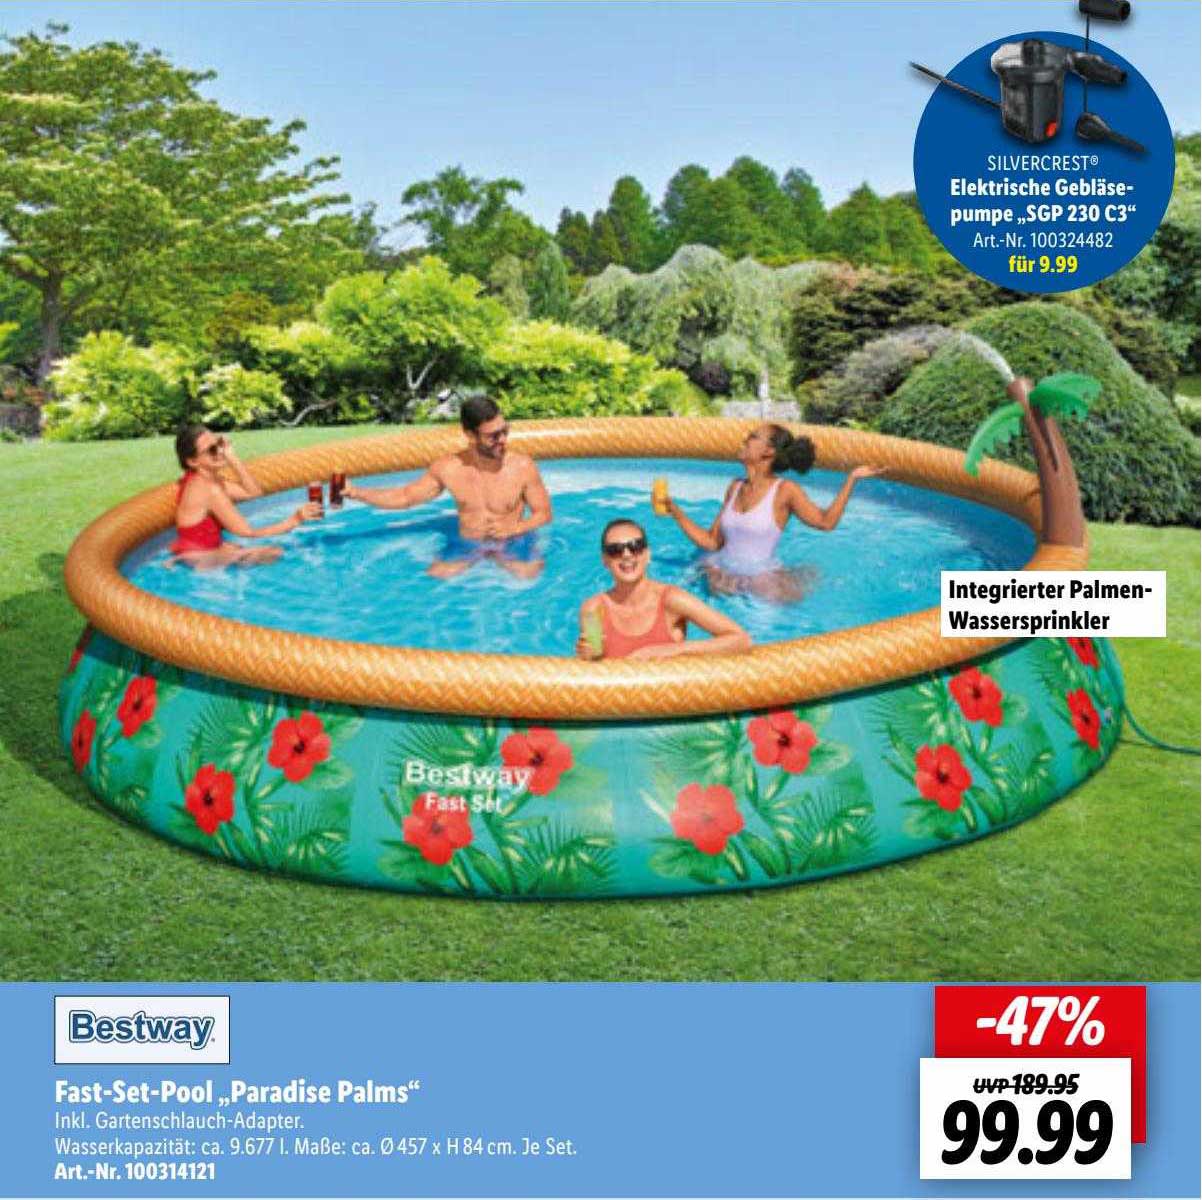 Bestway Fast-set-pool Lidl „paradise Angebot Palms” bei